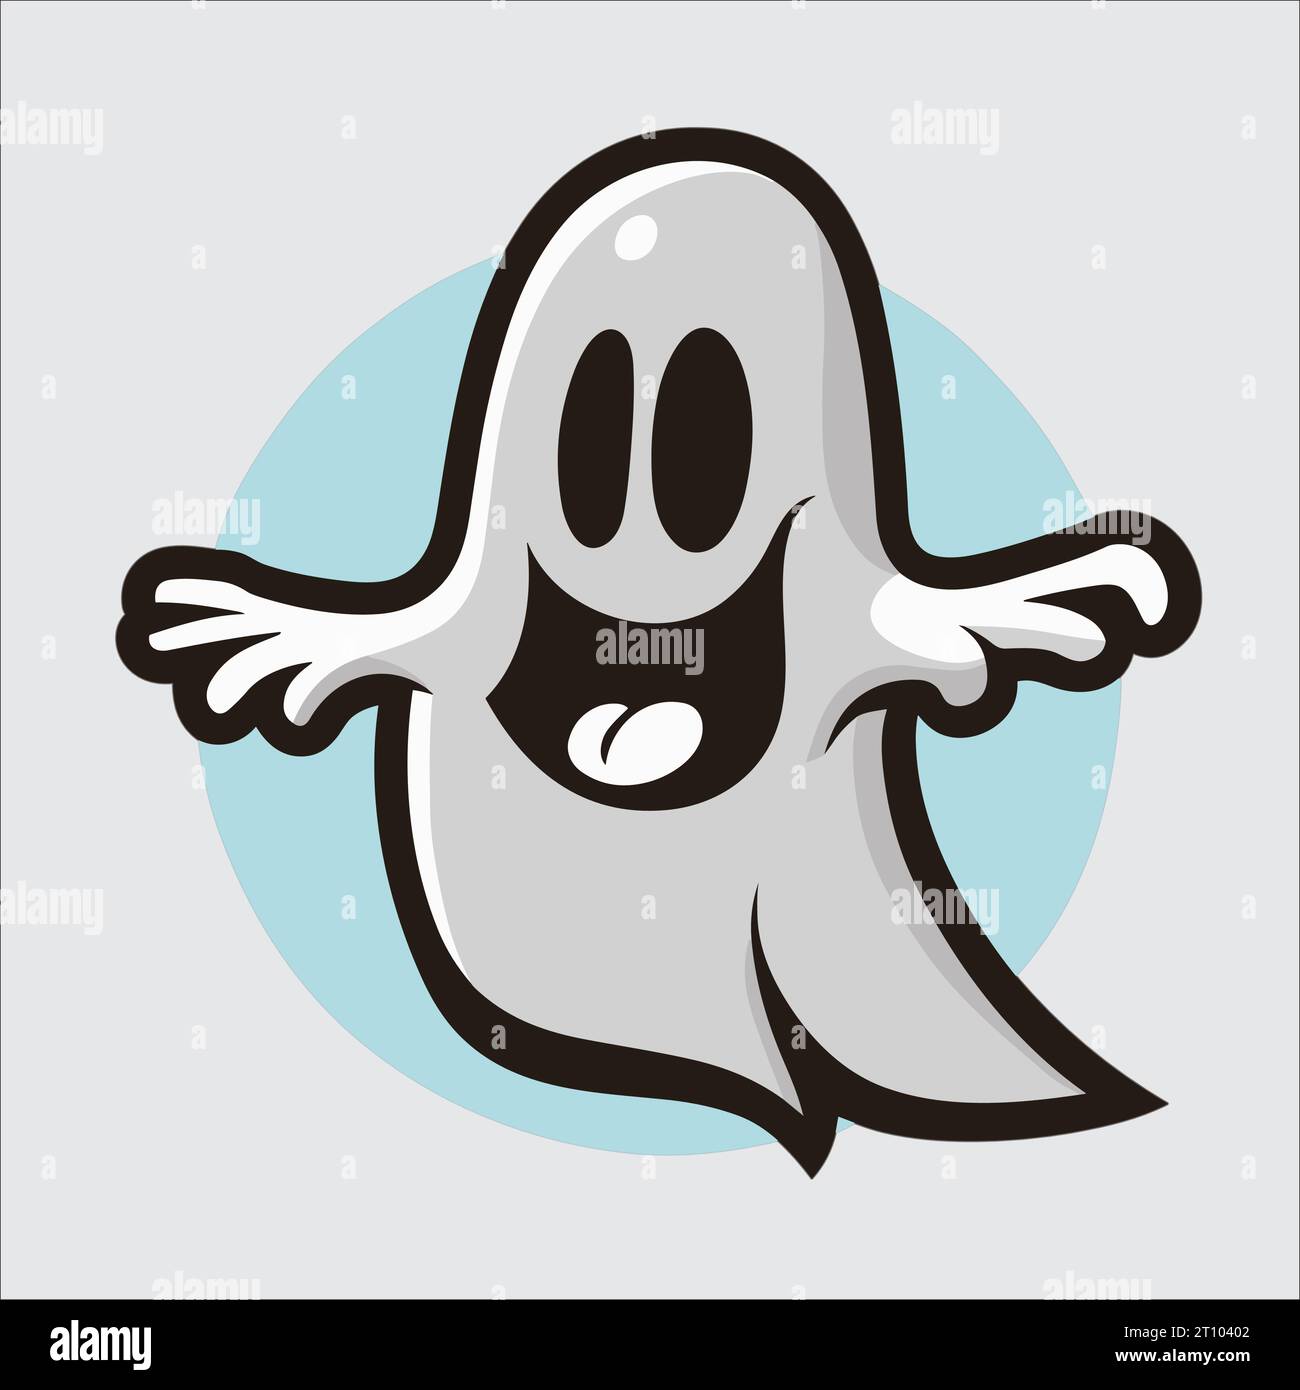 Simpatico vettore fantasma di Halloween: Grafica adorabile e spettrale che infastidisce i tuoi progetti. Perfetto per le decorazioni natalizie! Illustrazione Vettoriale